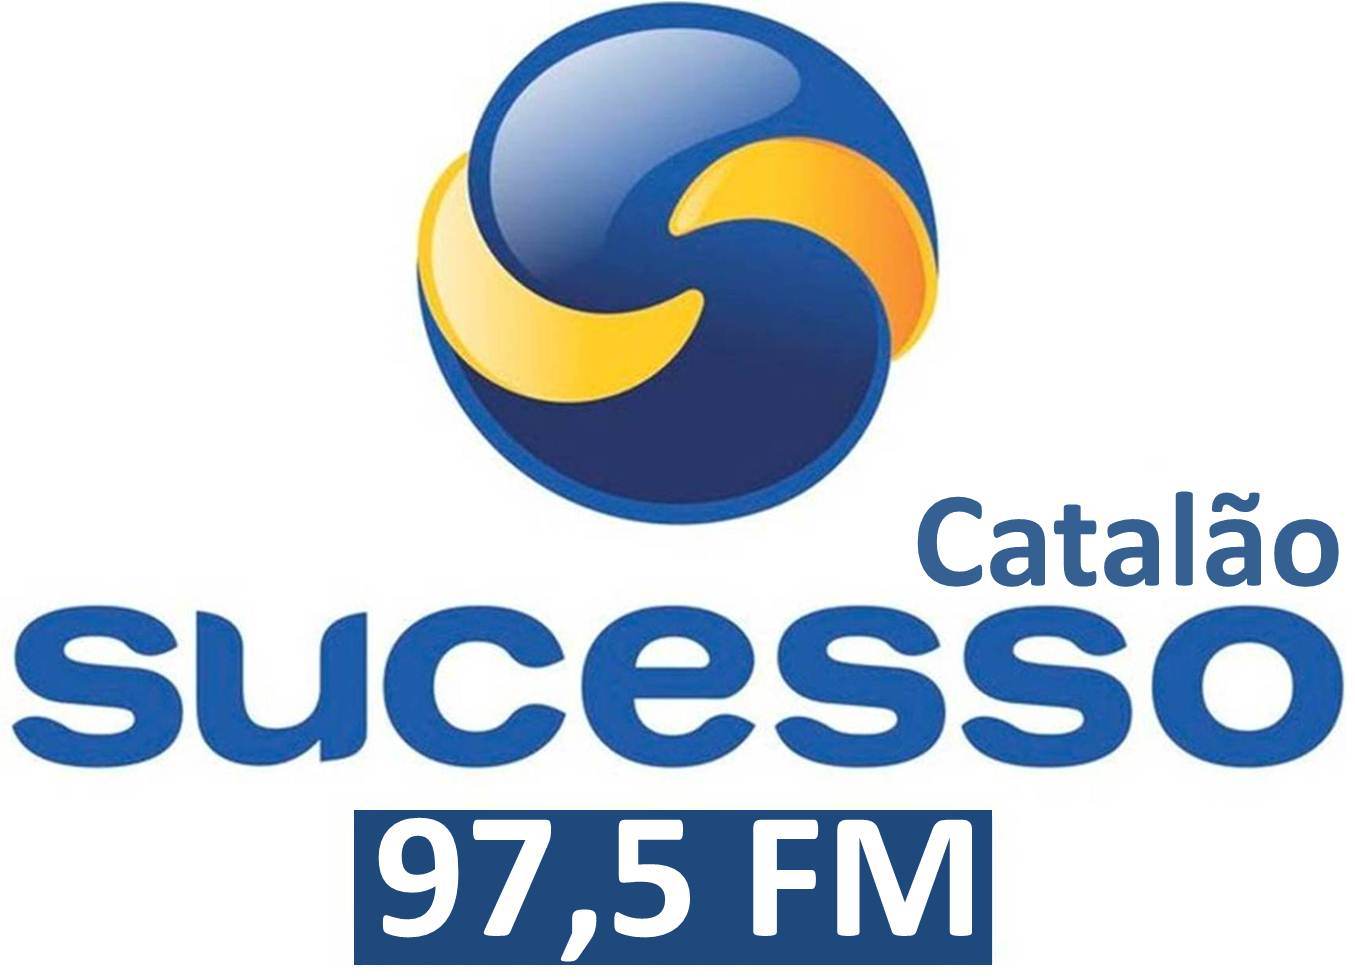 Resultado de imagem para radio sucesso catalao